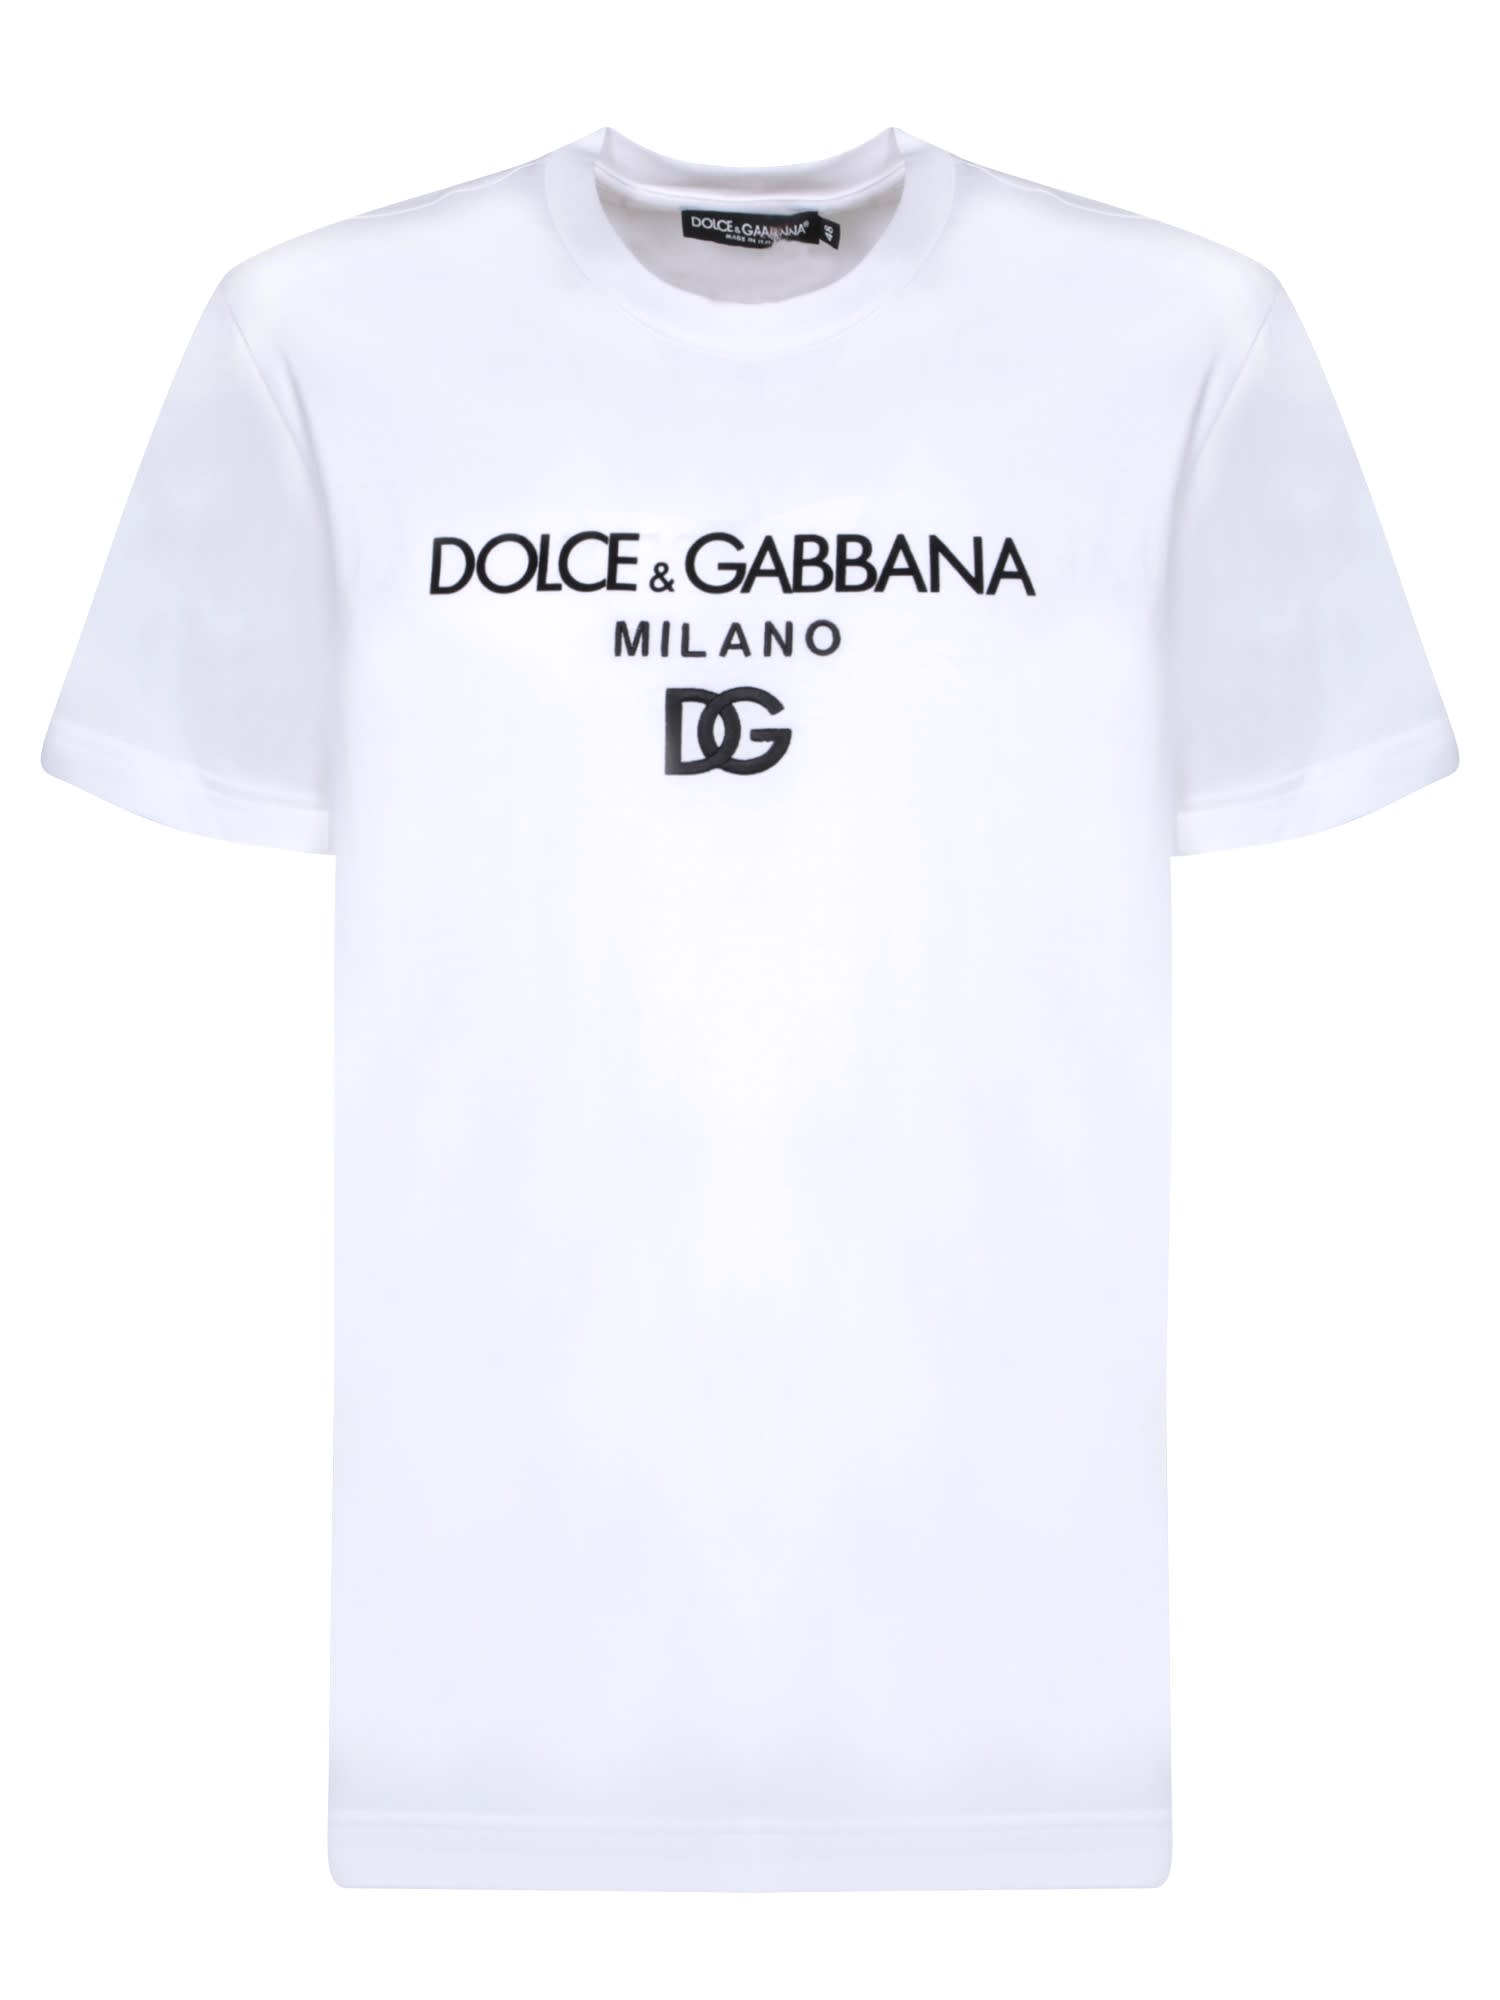 DOLCE & GABBANA LOGO WHITE T-SHIRT